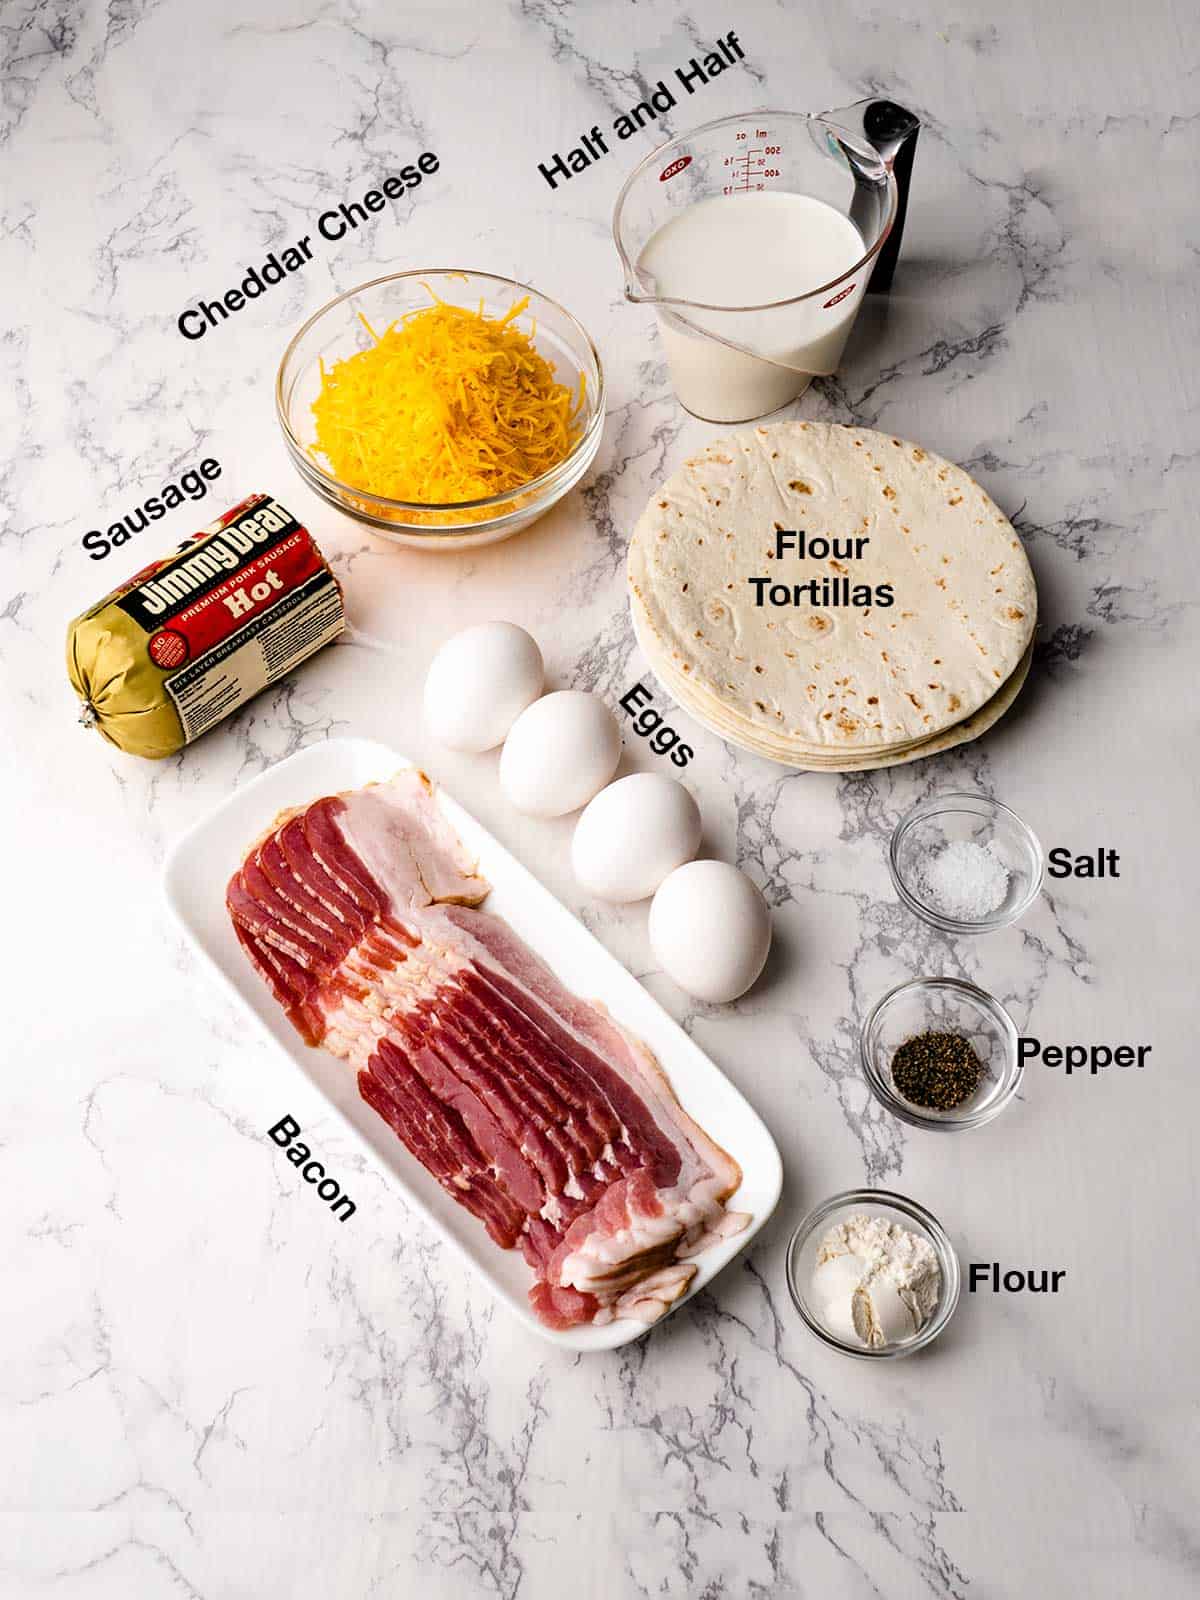 Ingredients for breakfast enchiladas